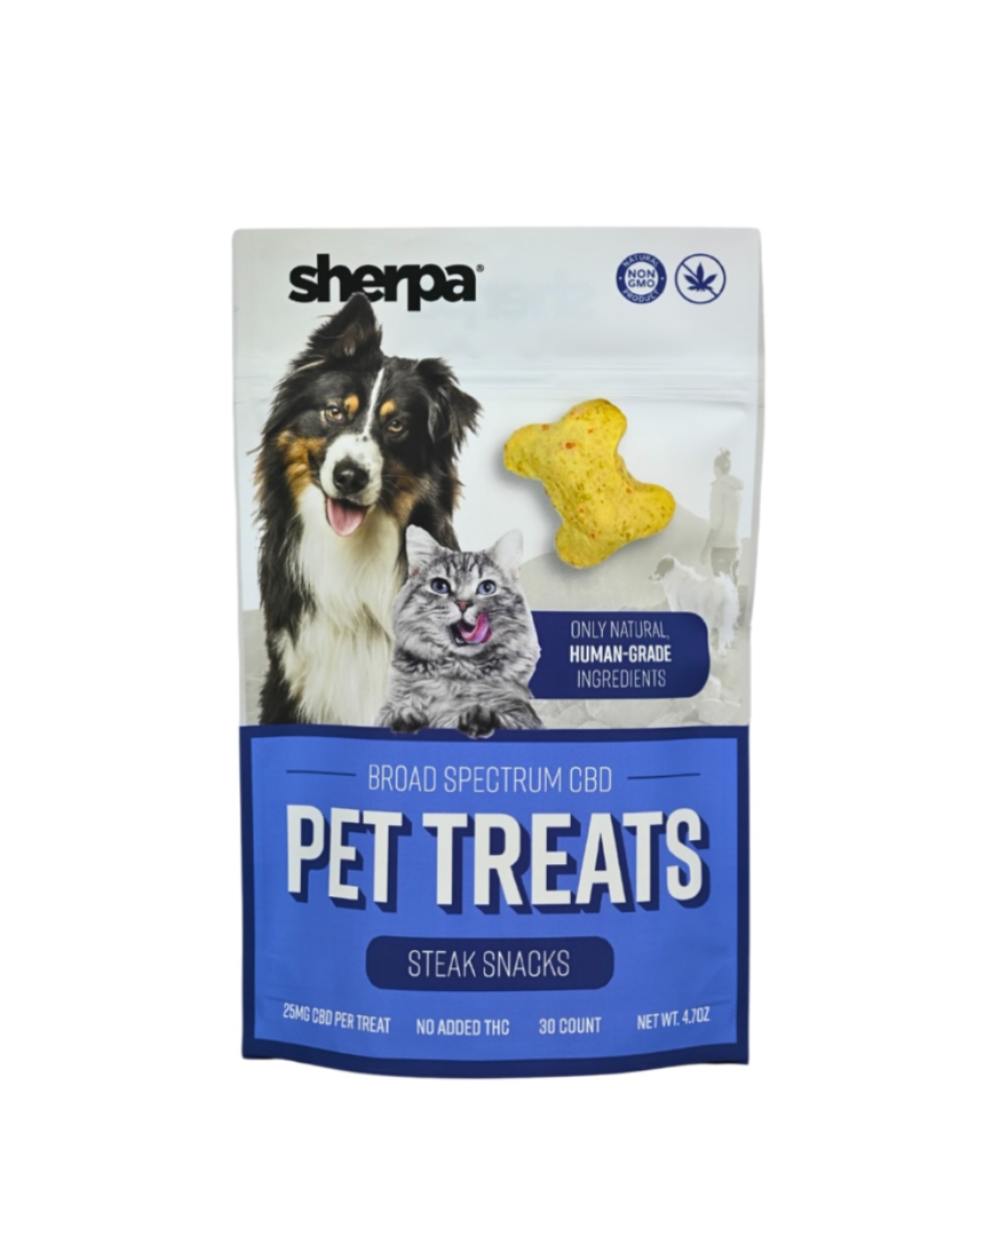 Steak Snack Pet Treats - 25mg per treat - Sherpa THC